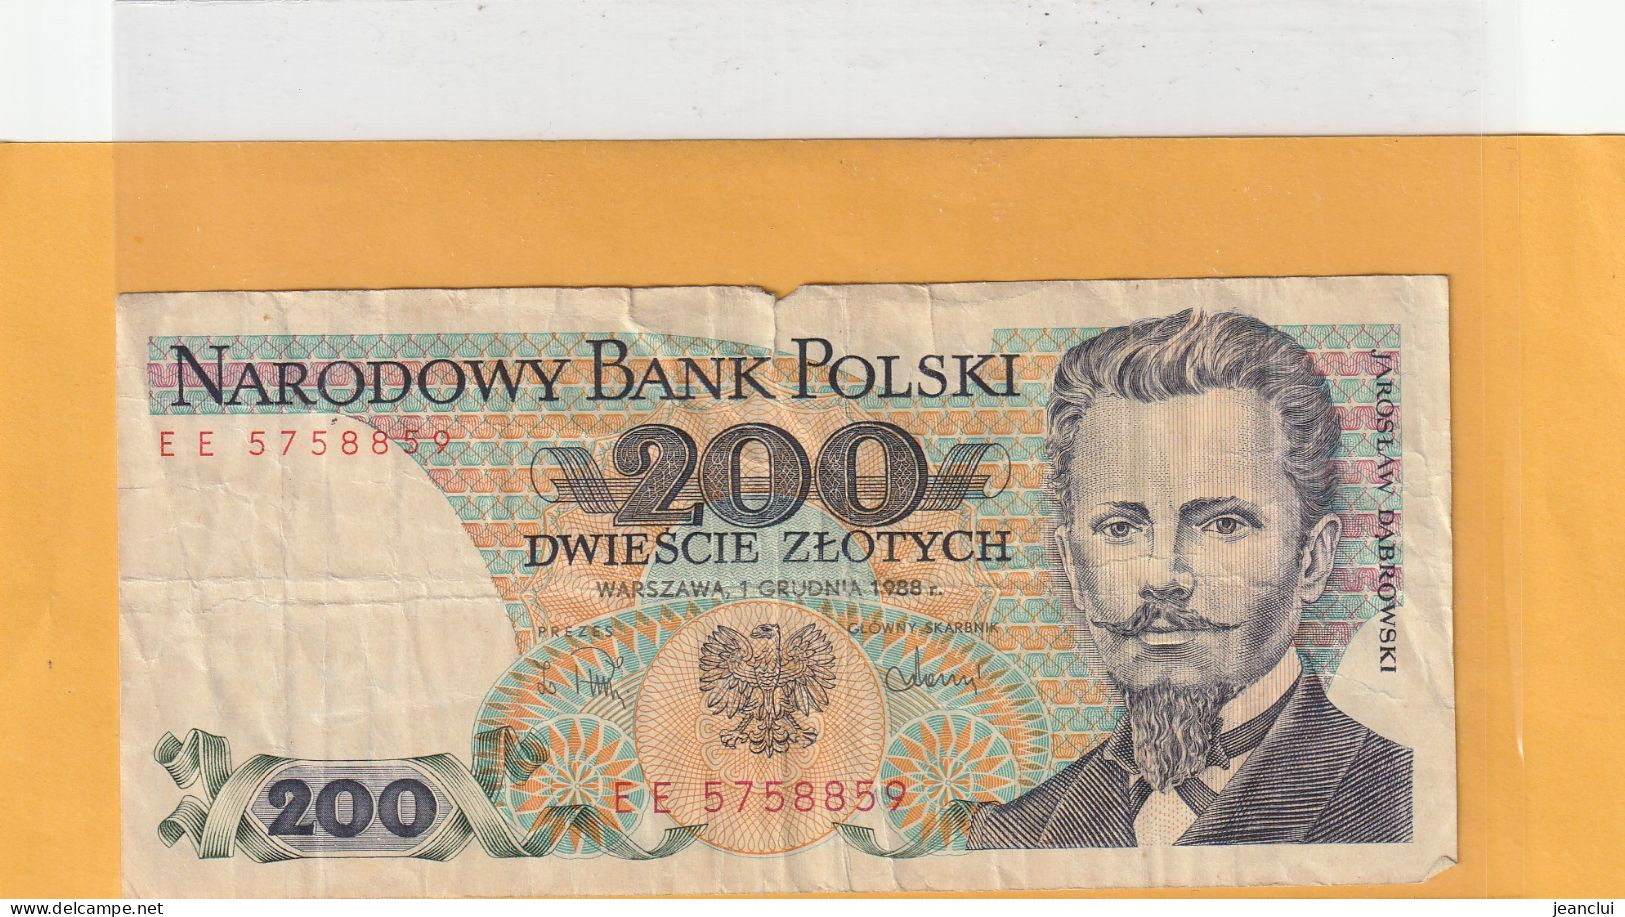 NARODOWY BANK POLSKI . 200 ZLOTYCH .  J. DABROWSKI  . 1-12-1988 .  N° EE 5758859 . 2 SCANNES  .  BILLET USITE - Polonia